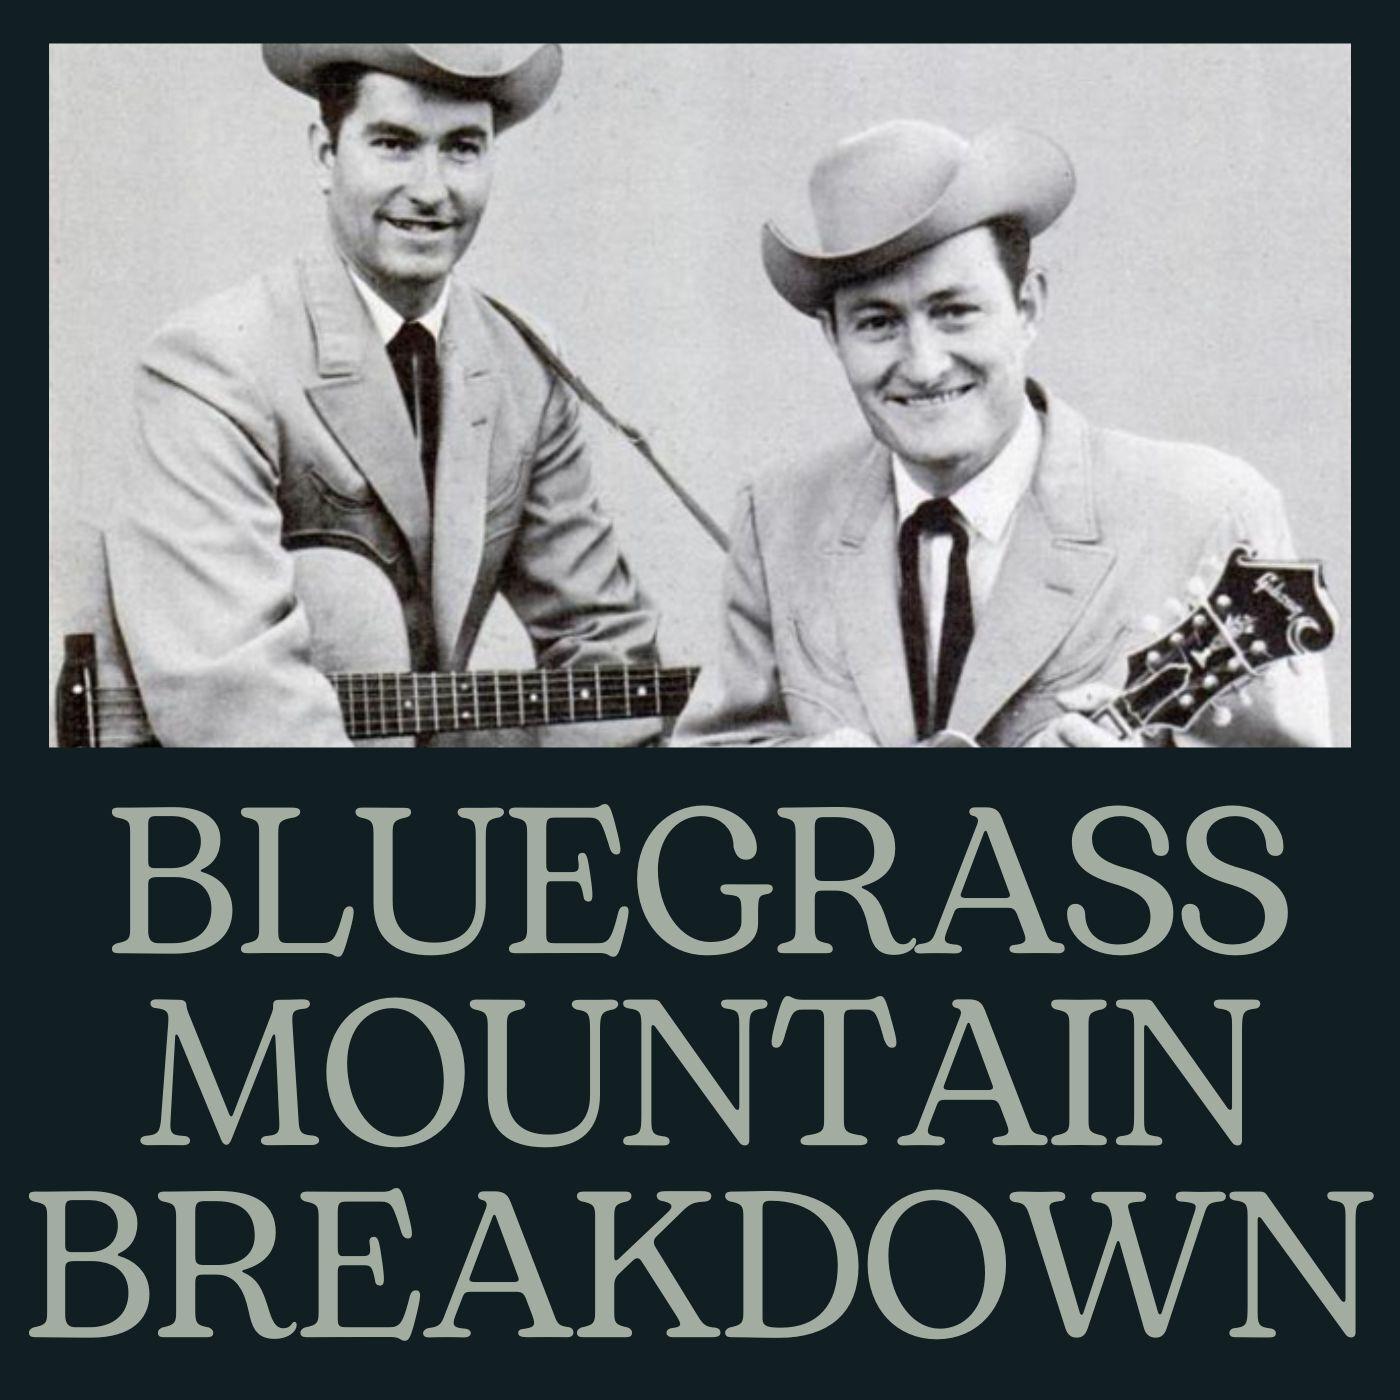 Bill Monroe - Bluegrass Breakdown